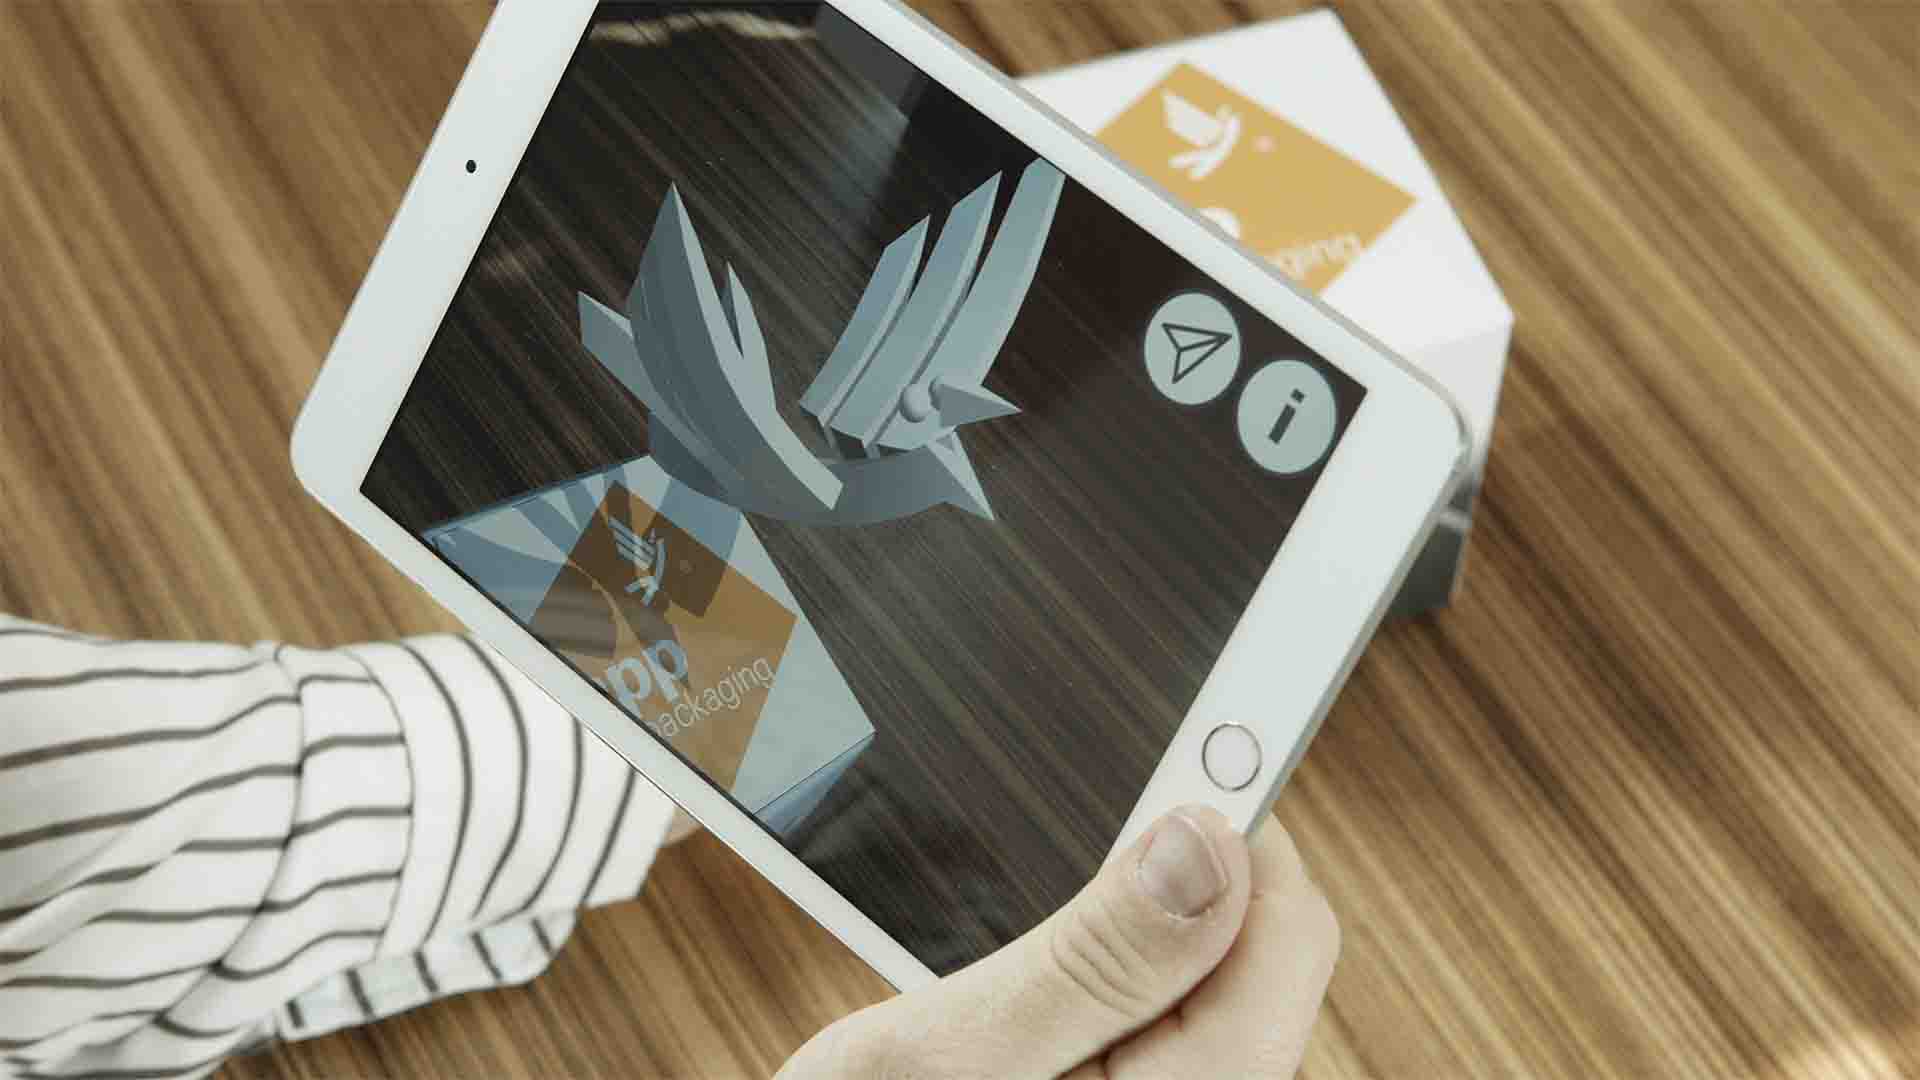 Dinkhauser Kartonagen setzt Augmented Reality für interaktive Verpackungen ein.